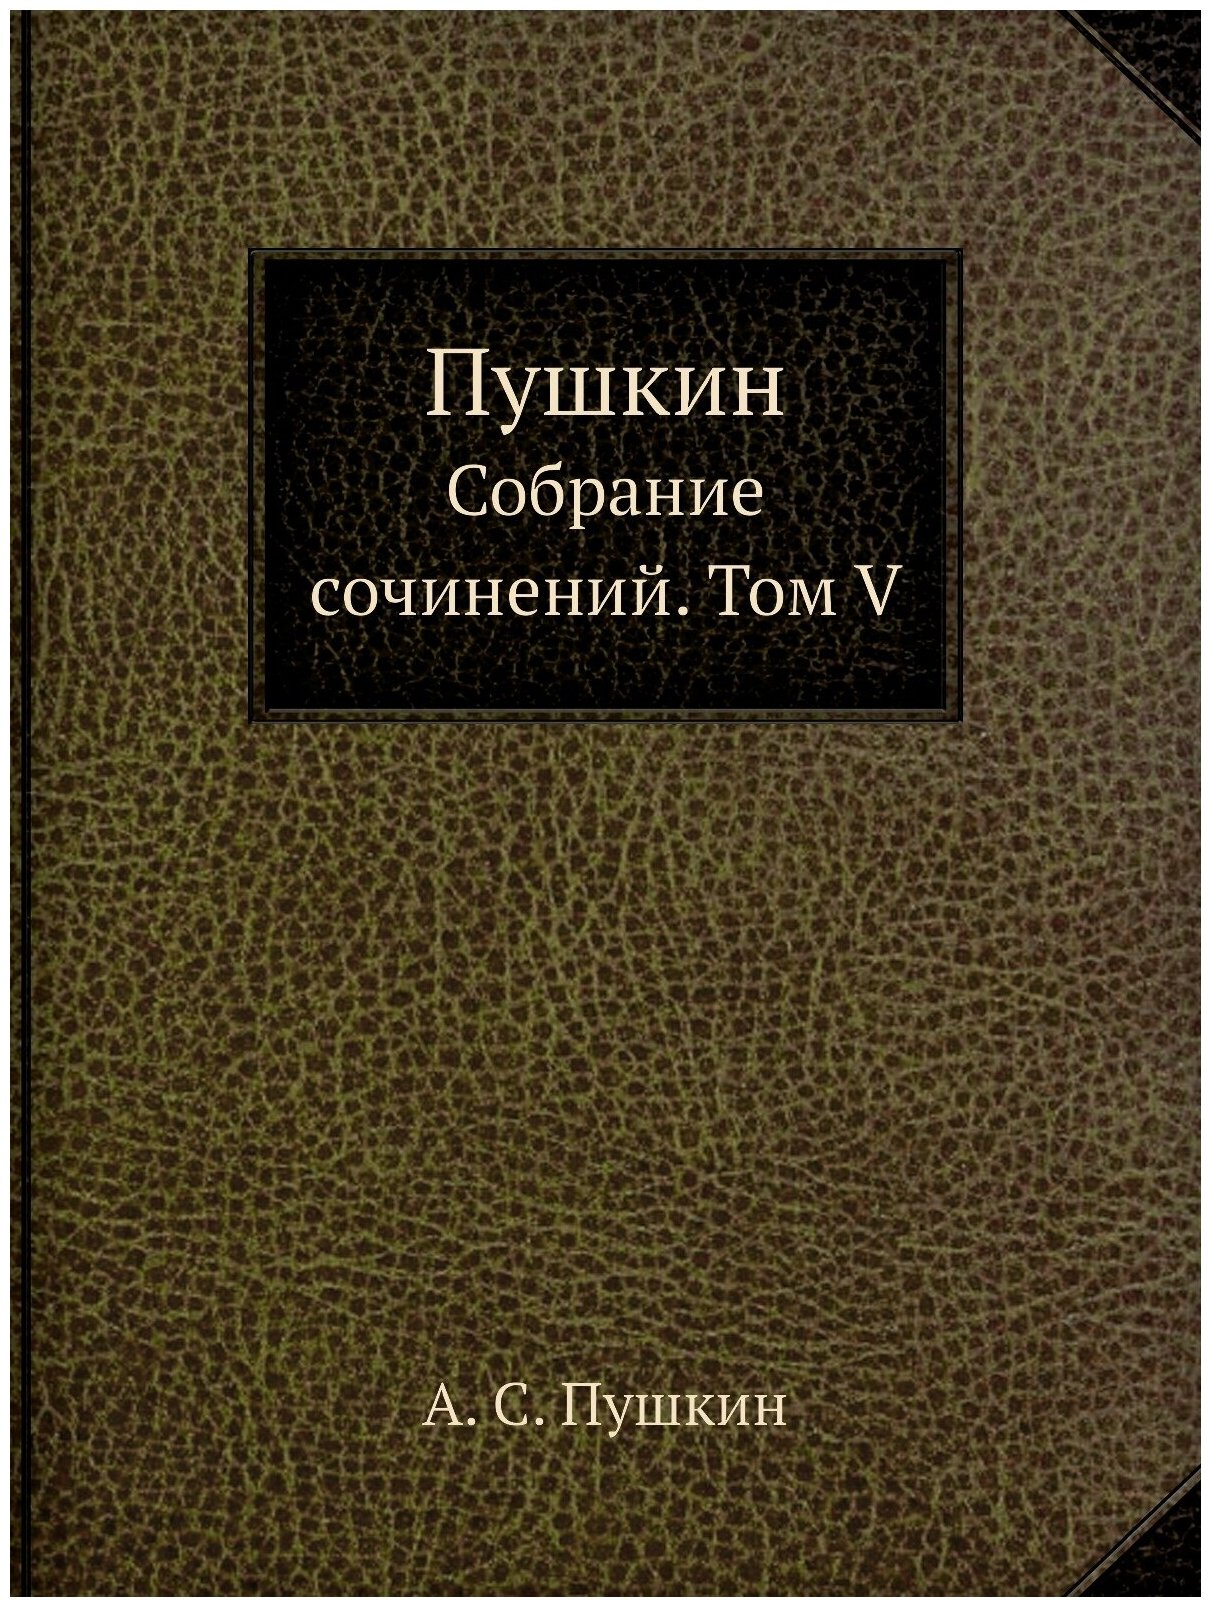 Пушкин. Собрание сочинений. Том V